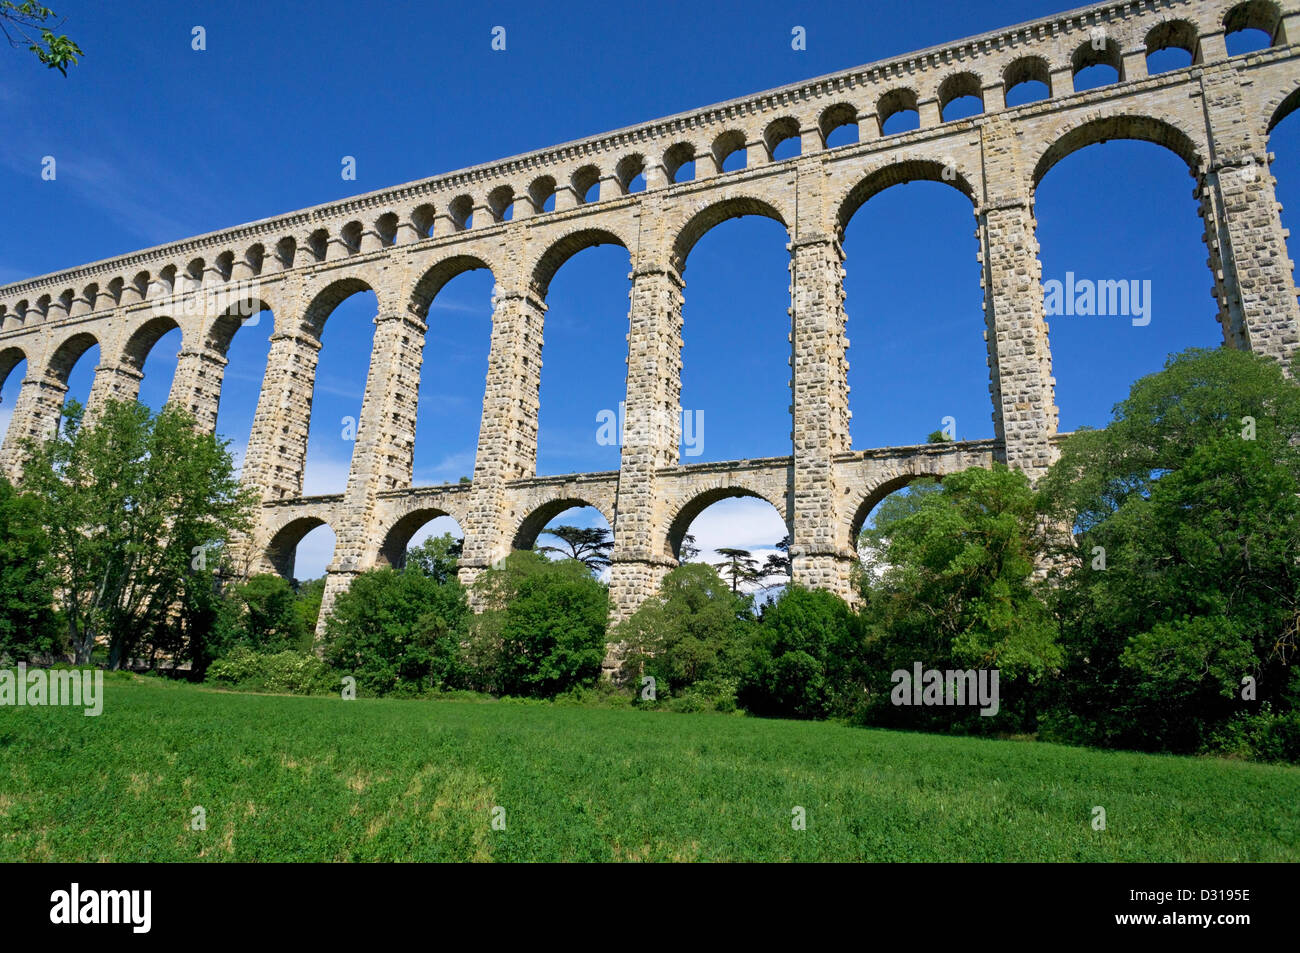 Acueducto de Roquefavor, Ventabren, Bouches-du-Rhone, Provenza, Francia Foto de stock